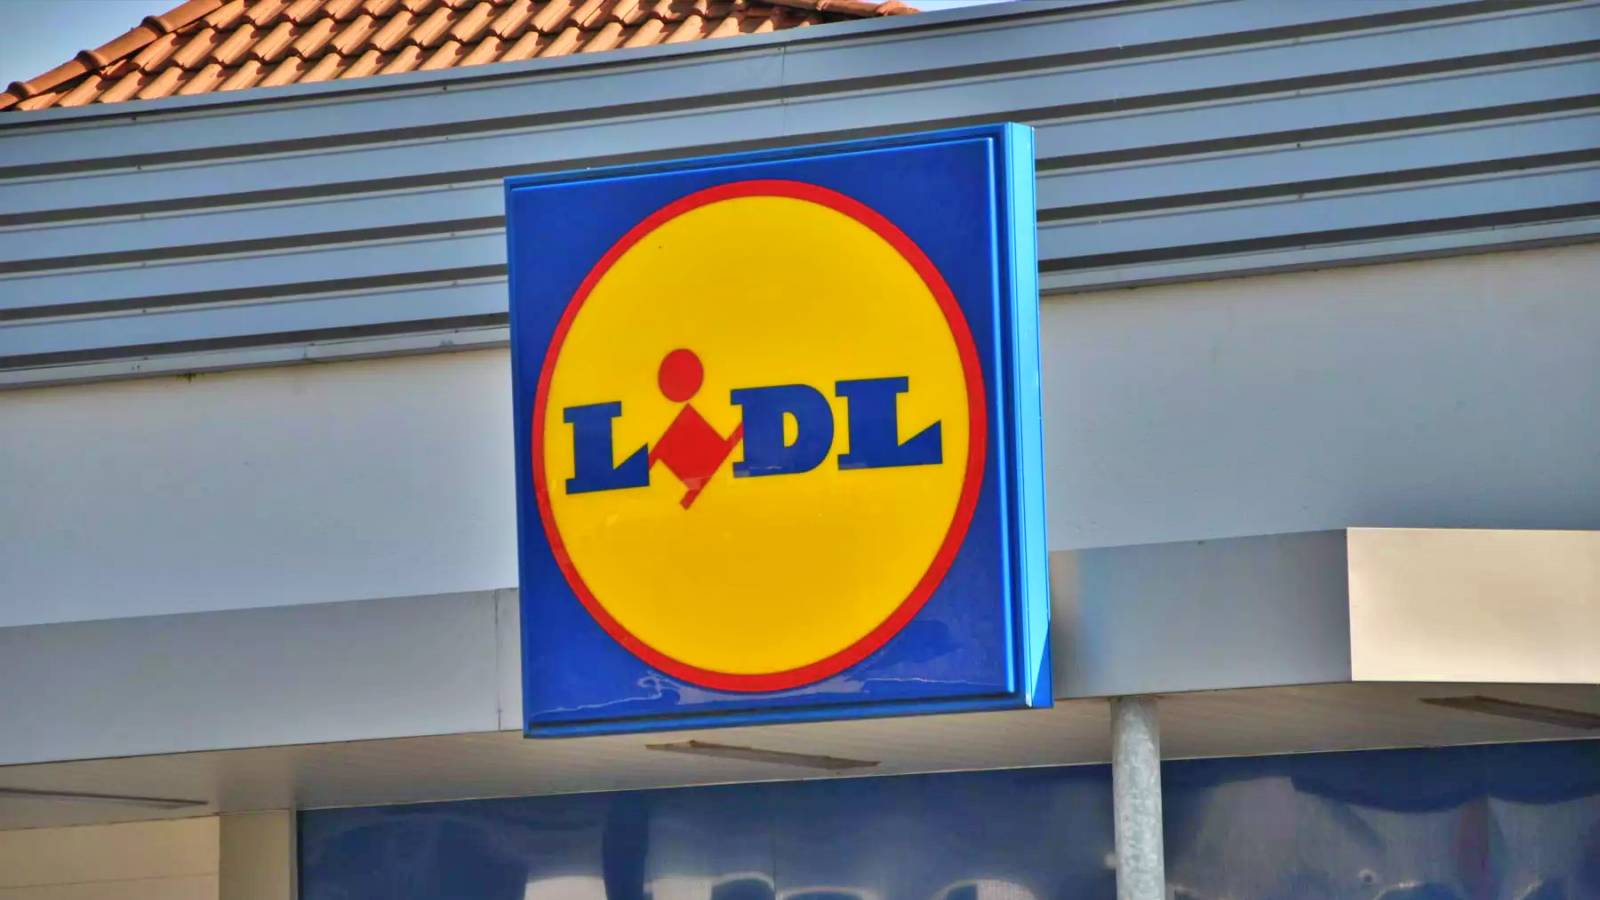 Annonce officielle de LIDL Roumanie Changements dans la boutique avant la nouvelle année